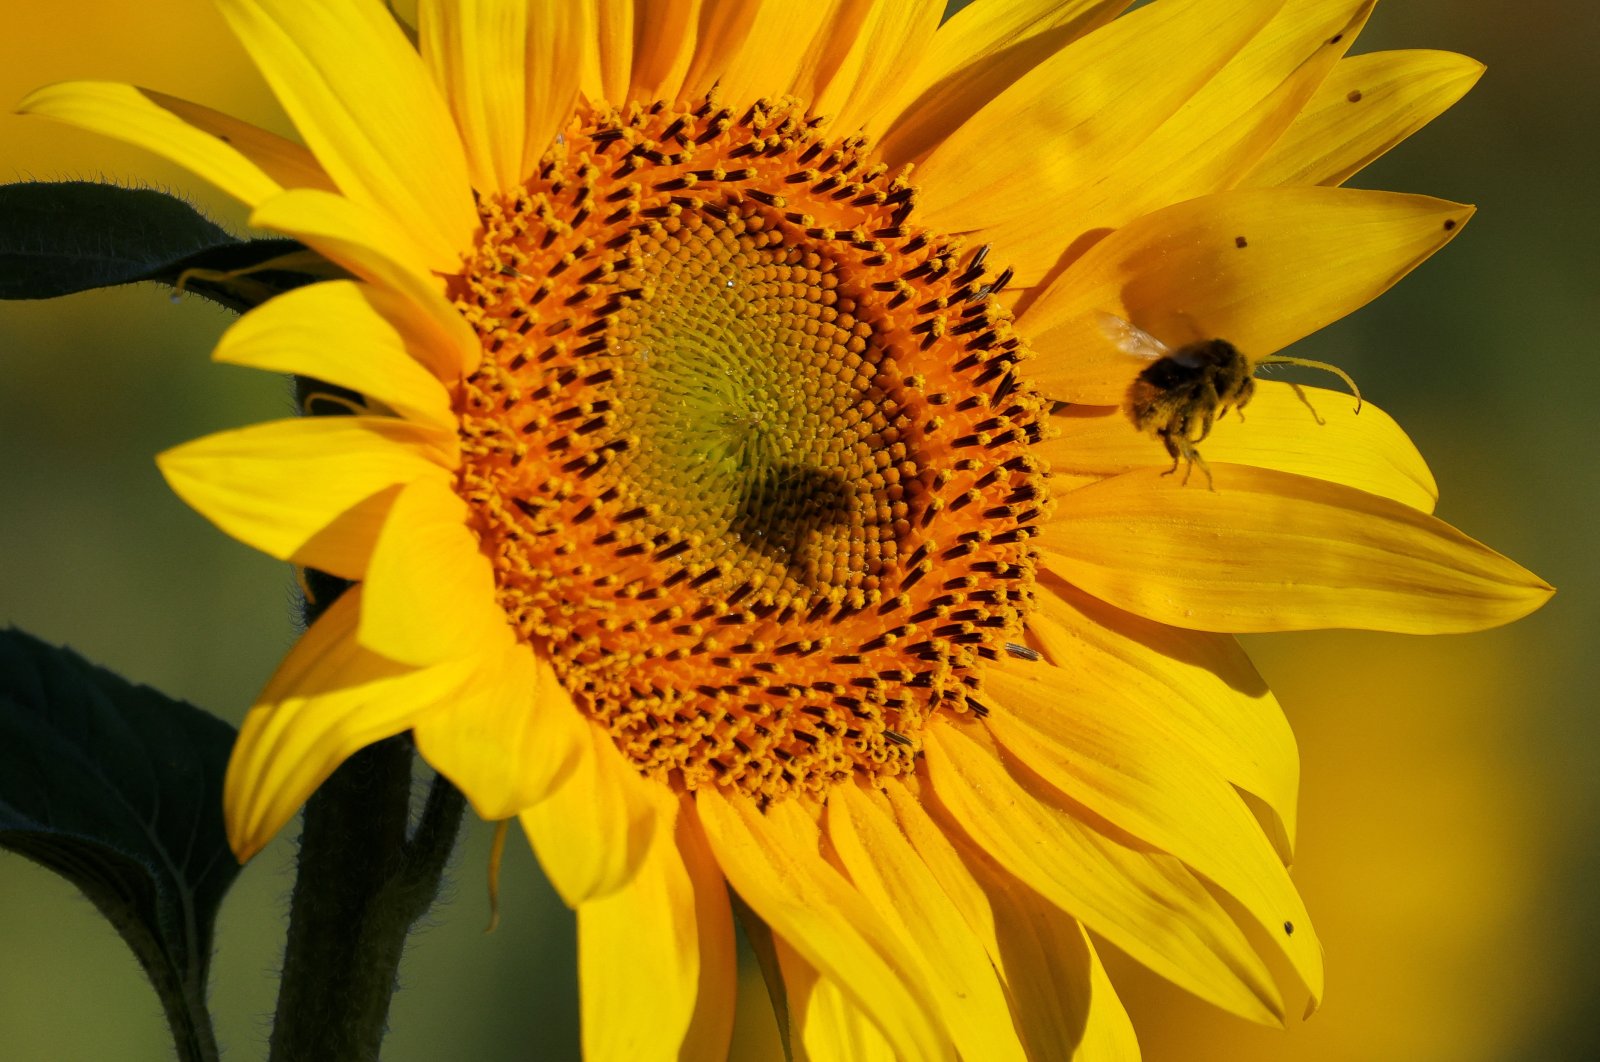 ‘Lebah tidak nyaman: Perubahan iklim menyebabkan sayap lebah miring